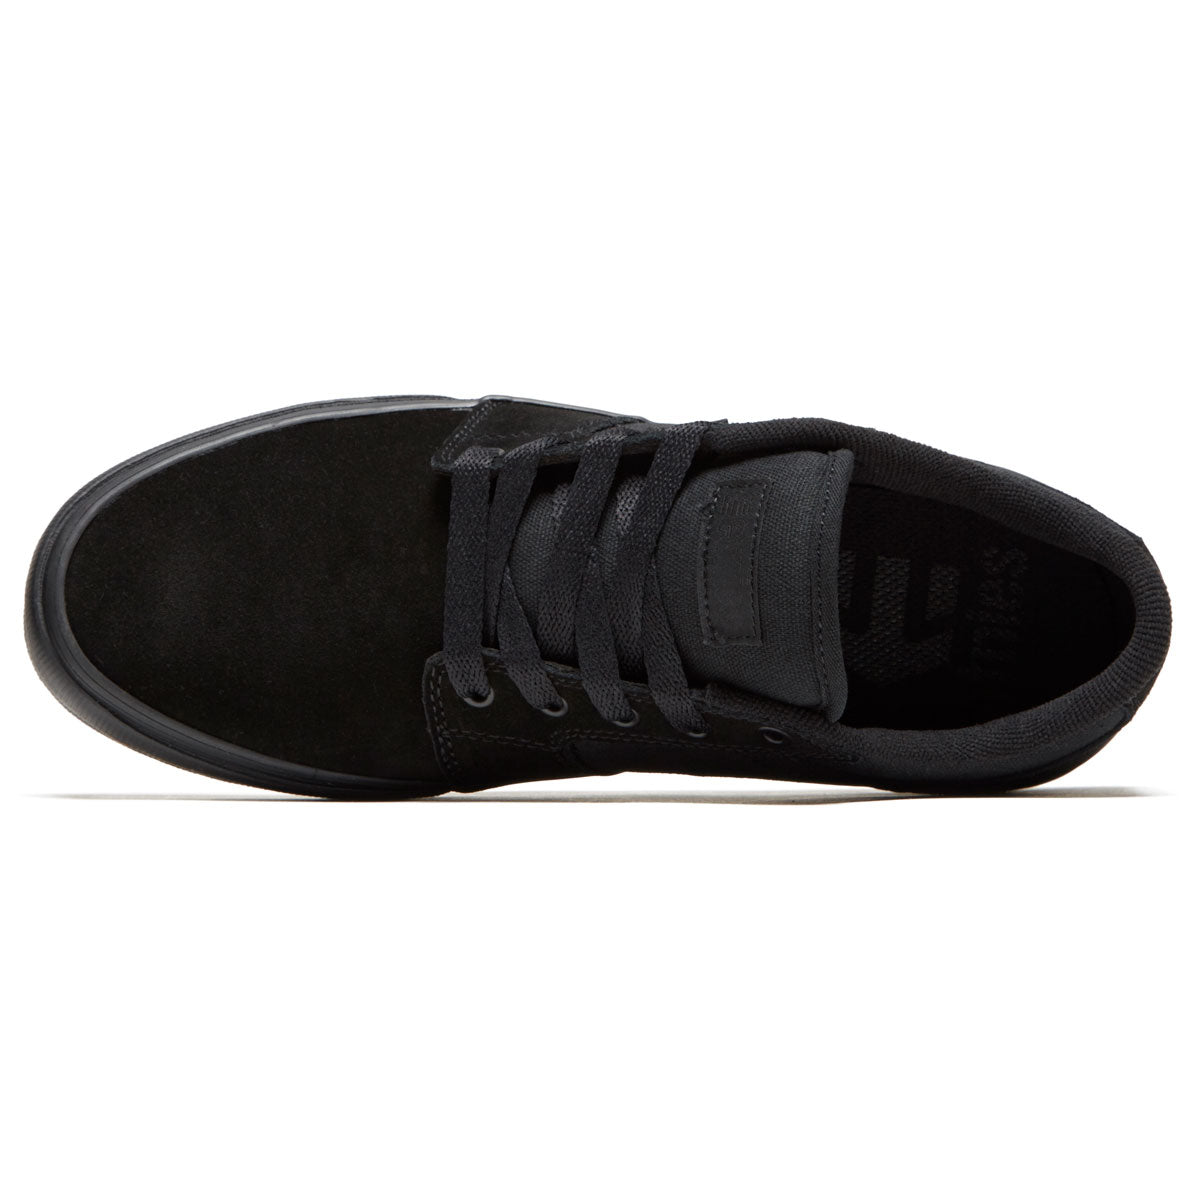 Etnies Barge Ls Shoes - Black/Black/Black image 3